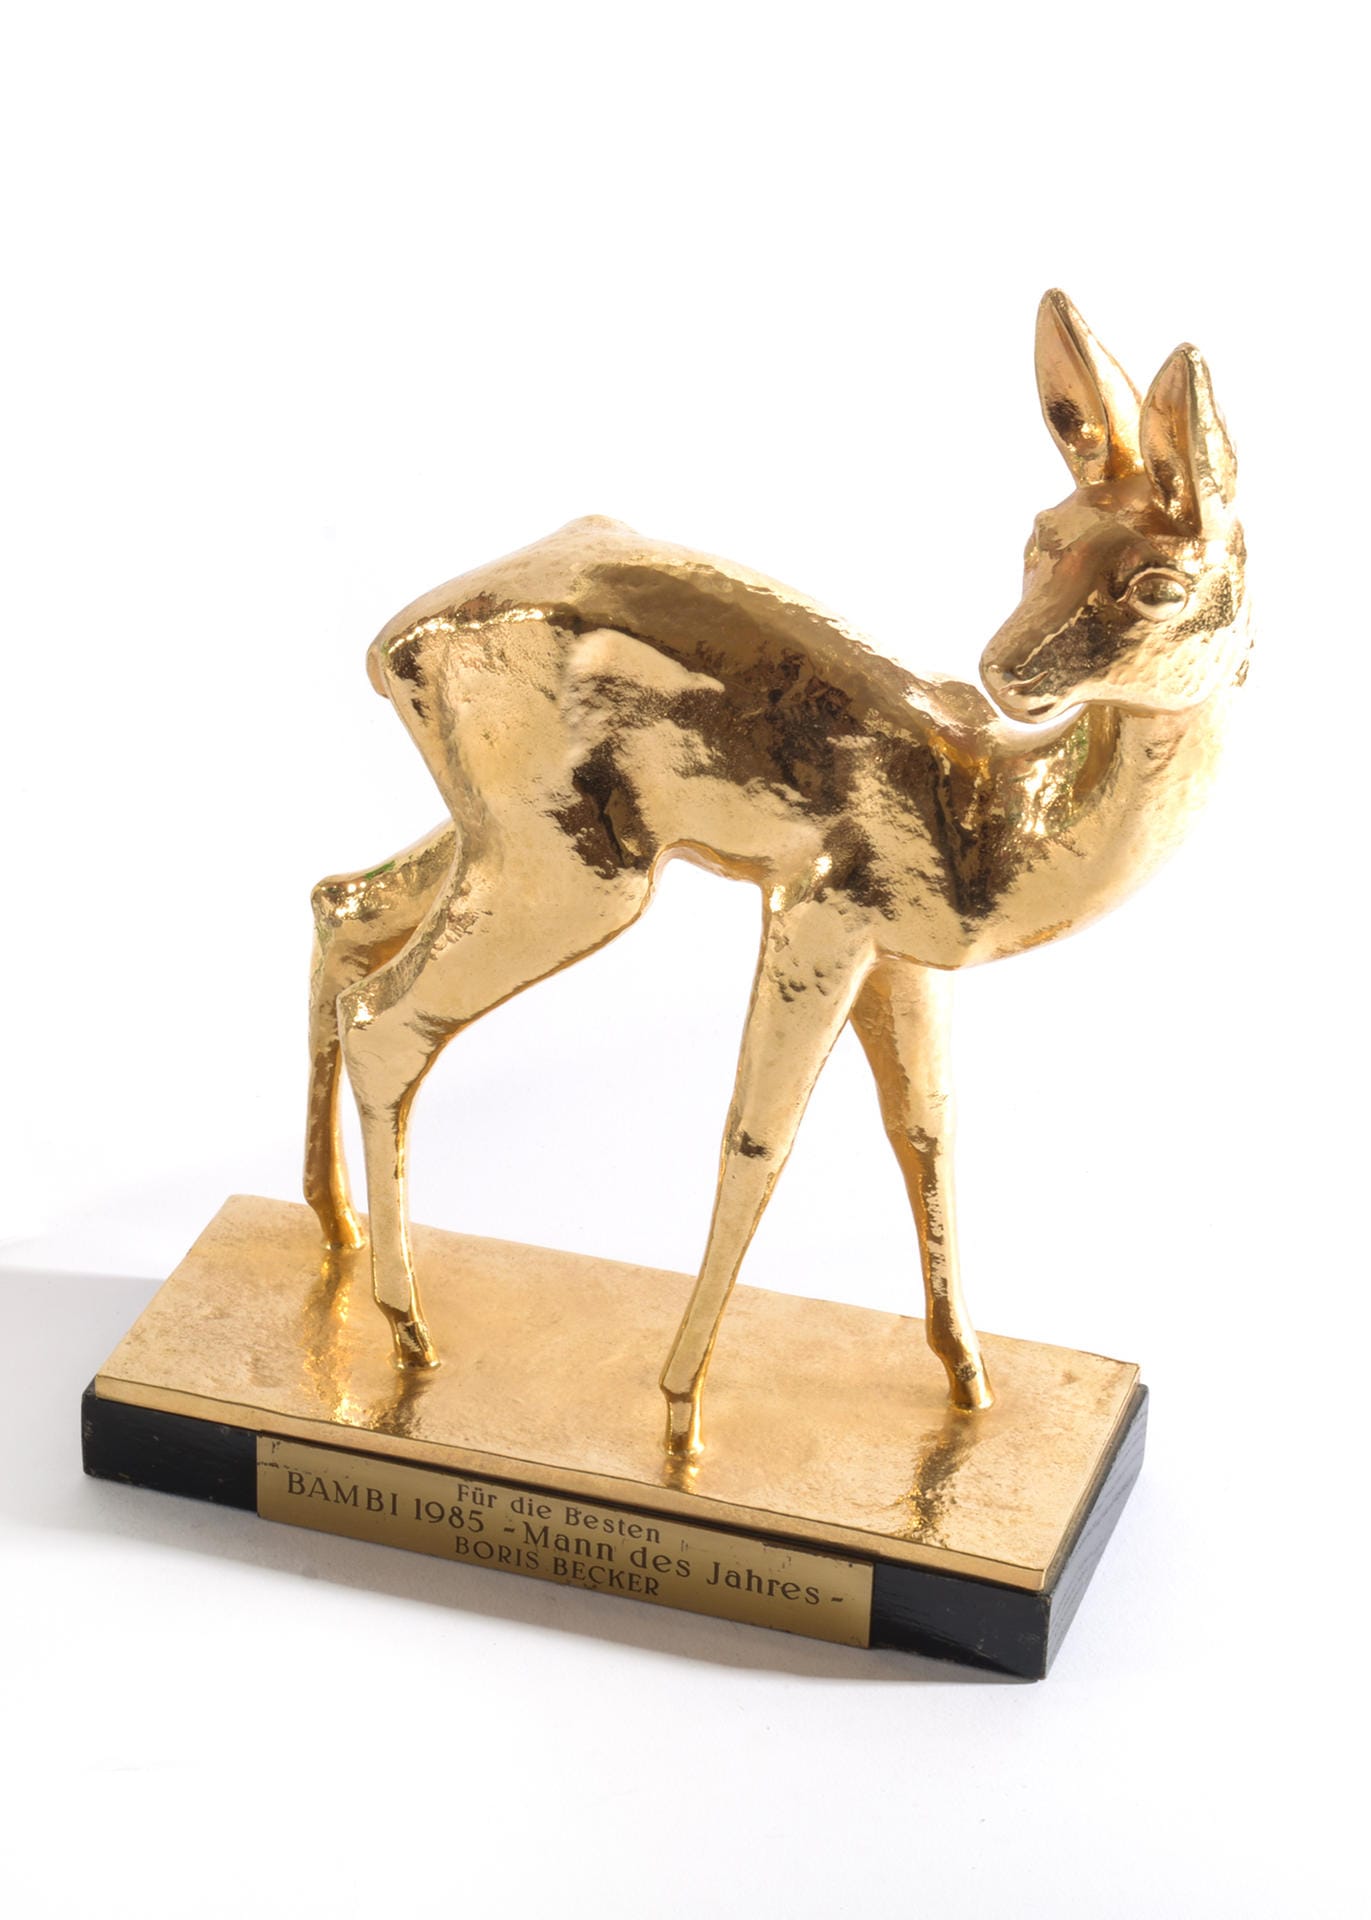 Die Bambi-Trophäe, mit der der ehemalige Tennisstars Boris Becker 1985 als "Mann des Jahres" ausgezeichnet wurde.